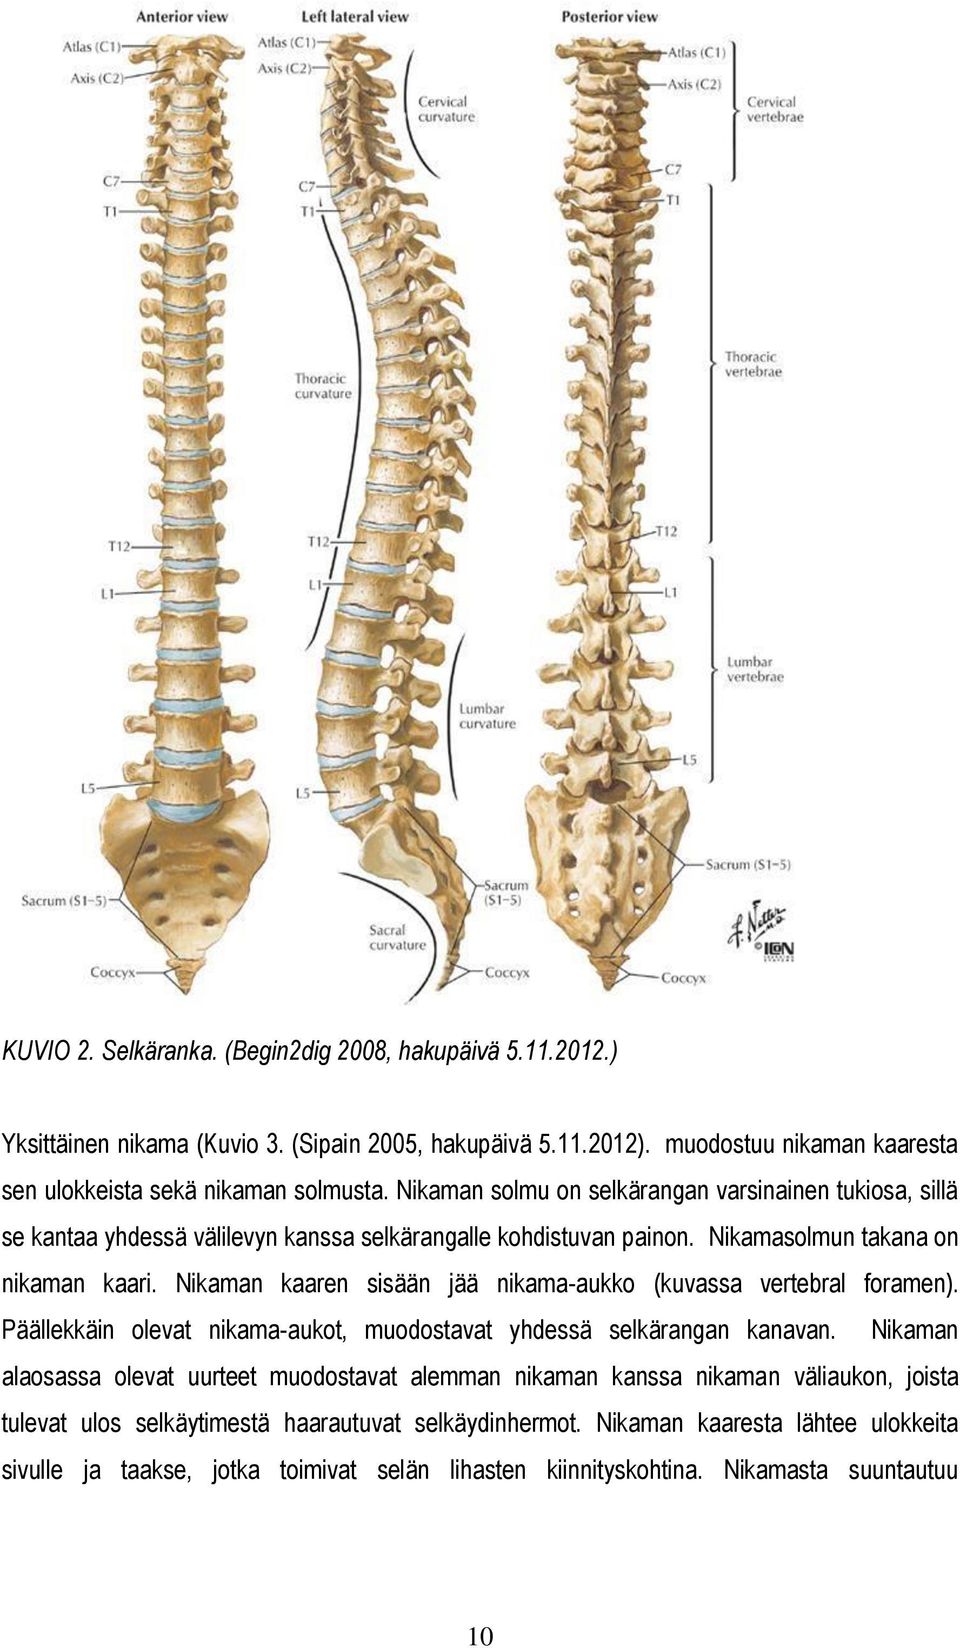 Nikaman kaaren sisään jää nikama-aukko (kuvassa vertebral foramen). Päällekkäin olevat nikama-aukot, muodostavat yhdessä selkärangan kanavan.